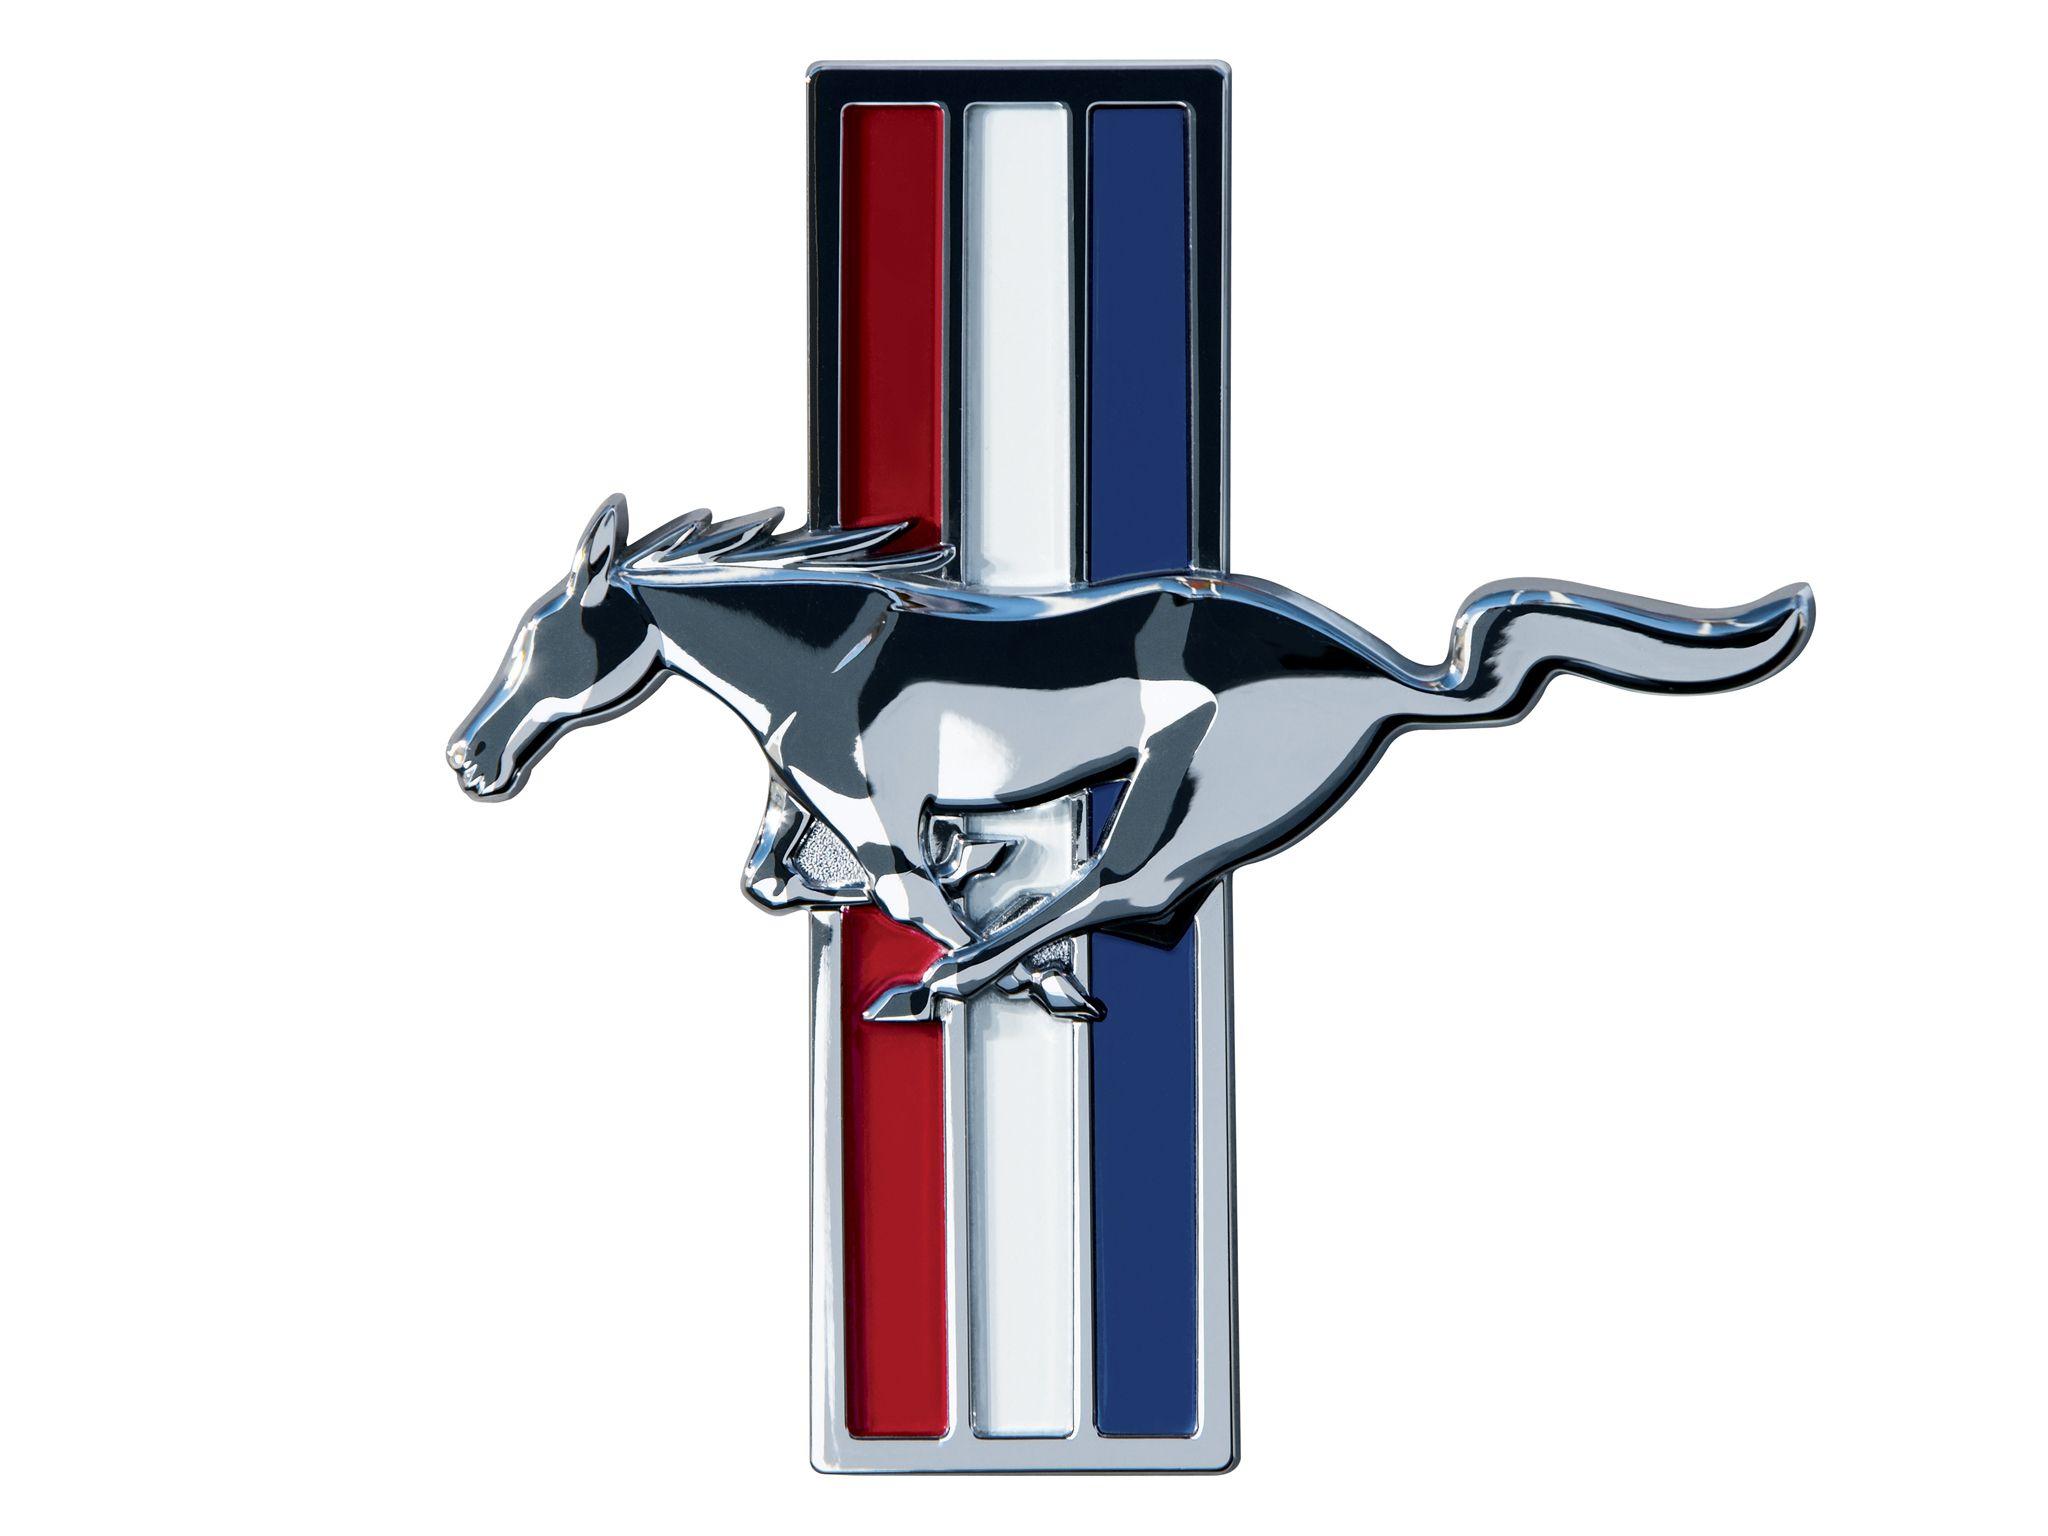 Hình ảnh logo Mustang 2048x1536, Hình nền logo Mustang